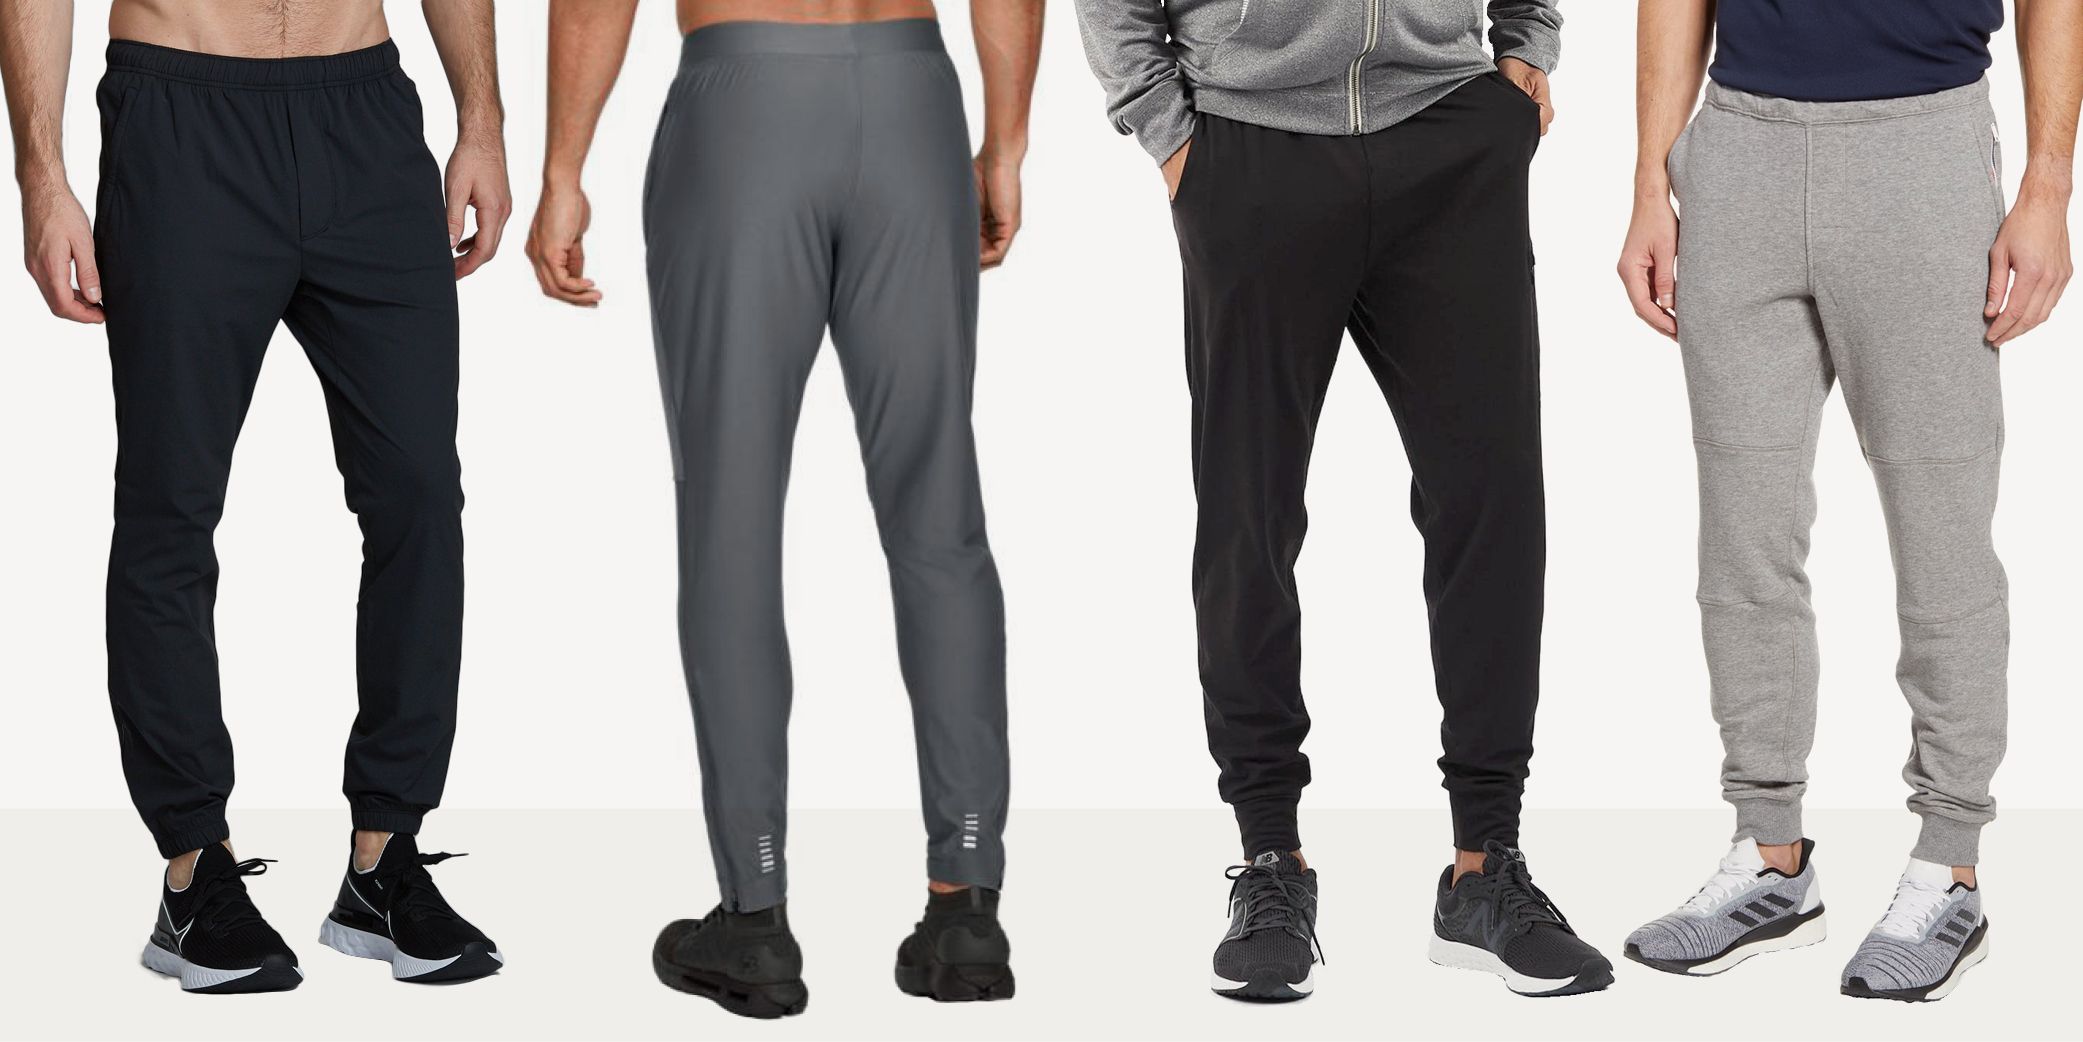 Best Workout Pants for Men 2020 | Men's 